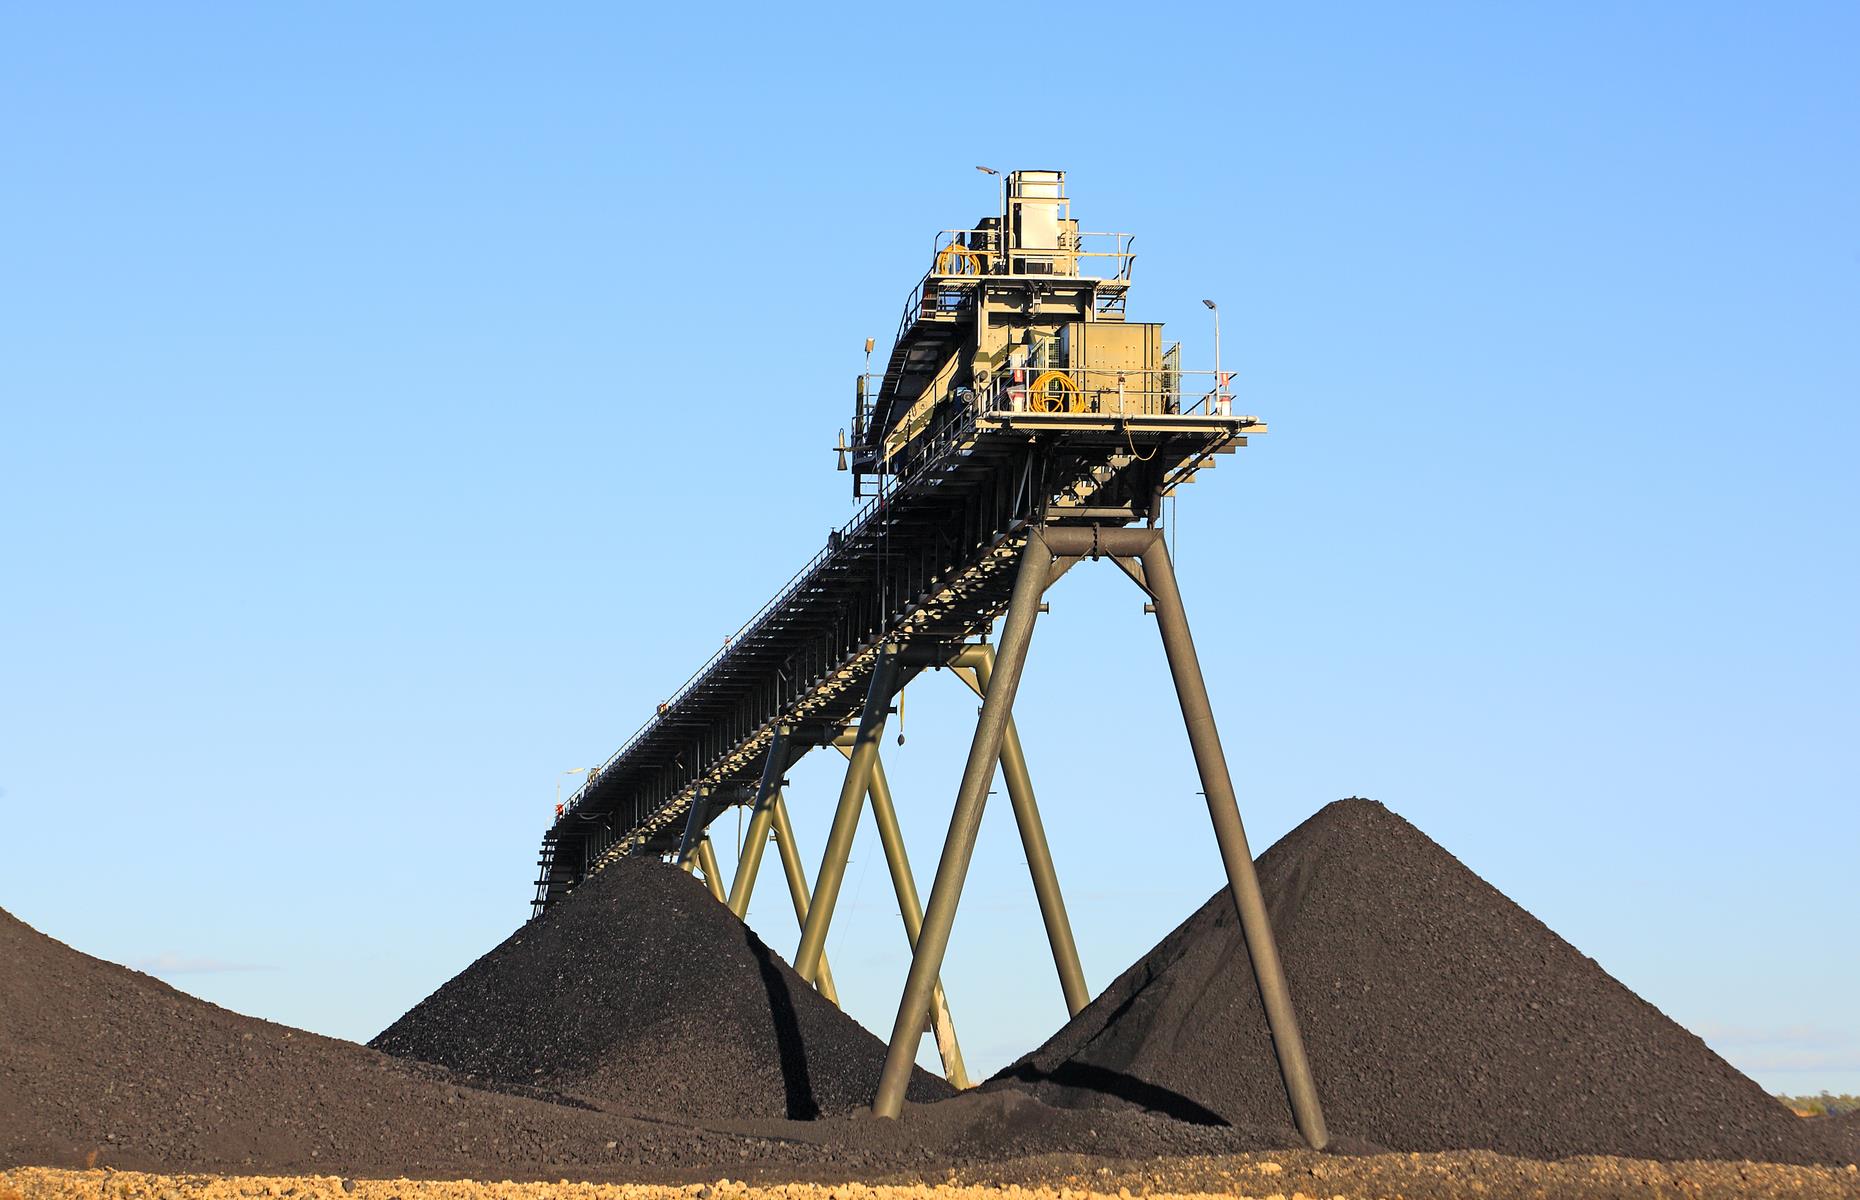 Australia's biggest export is coal